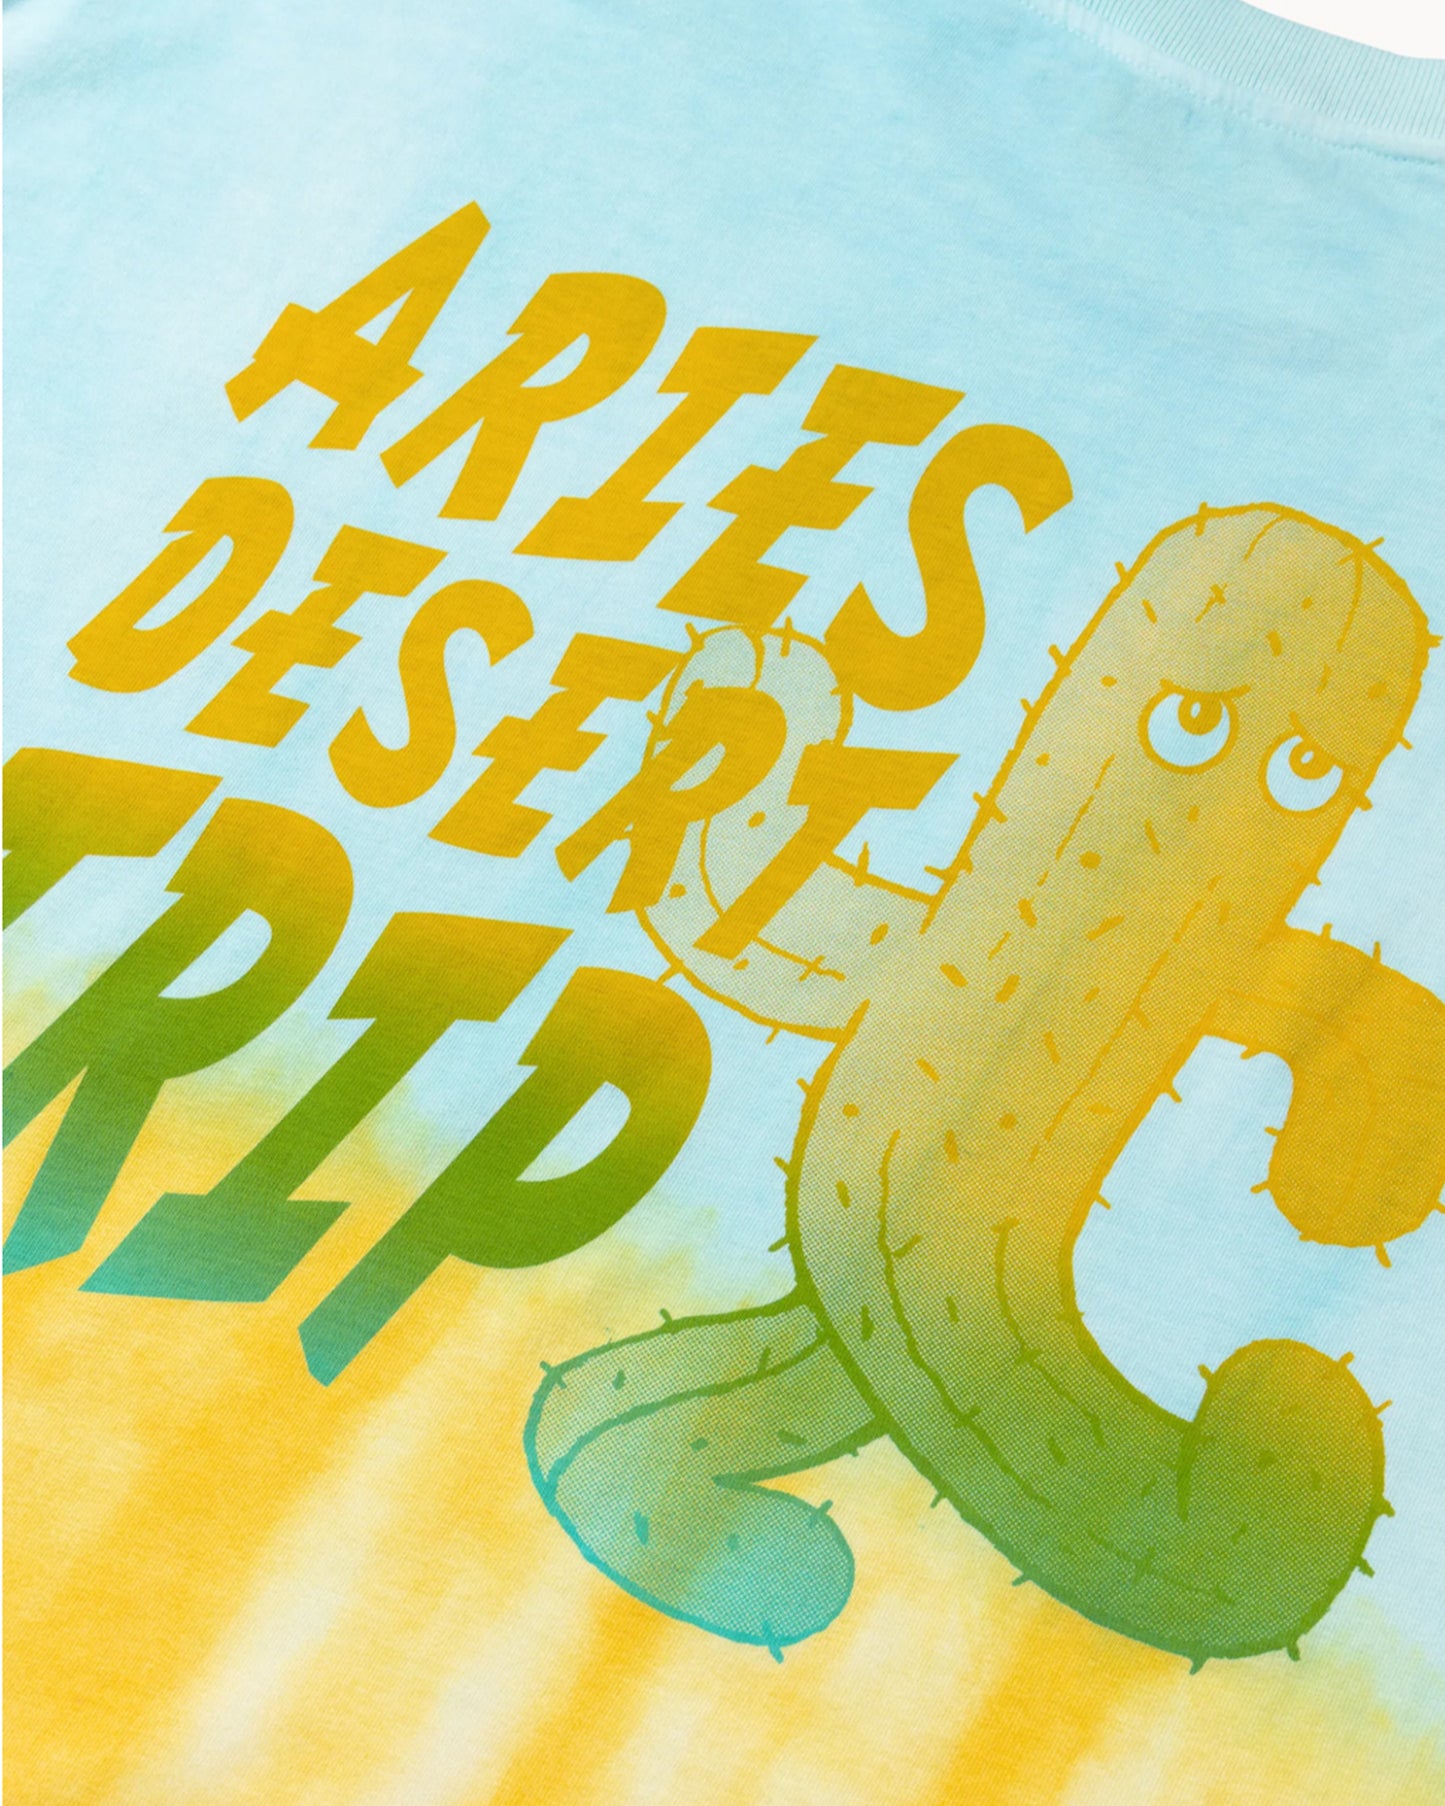 アリーズ/Desert trip dip-dye ss tee/Tシャツ/Blue